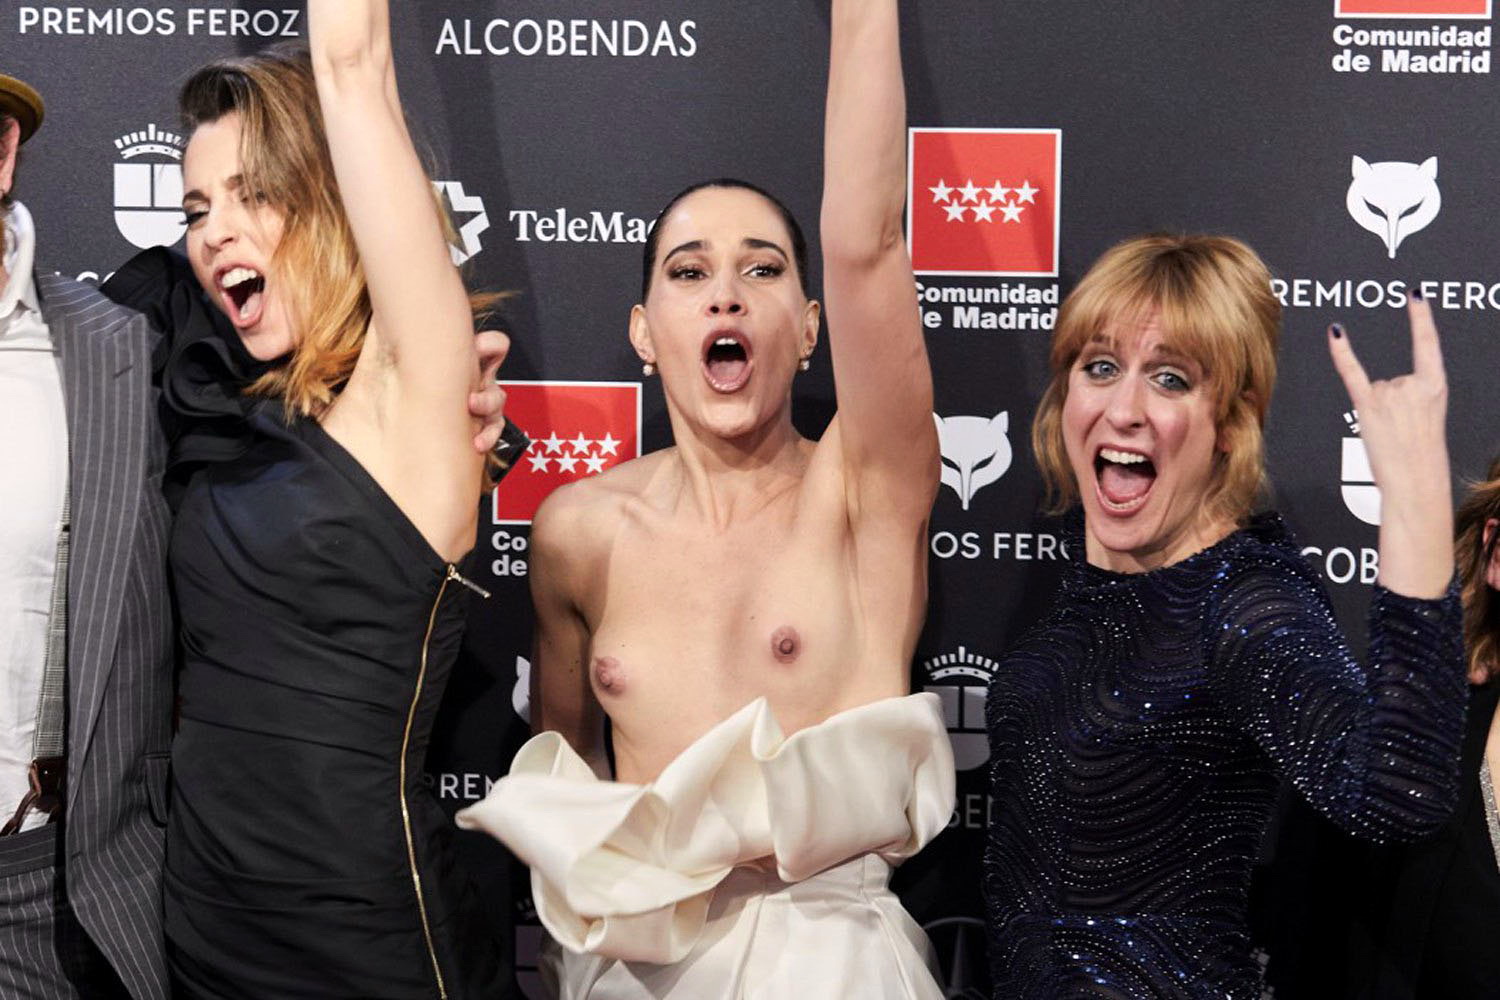 Celia Freijeiro Goes Nude On The Red Carpet 0003